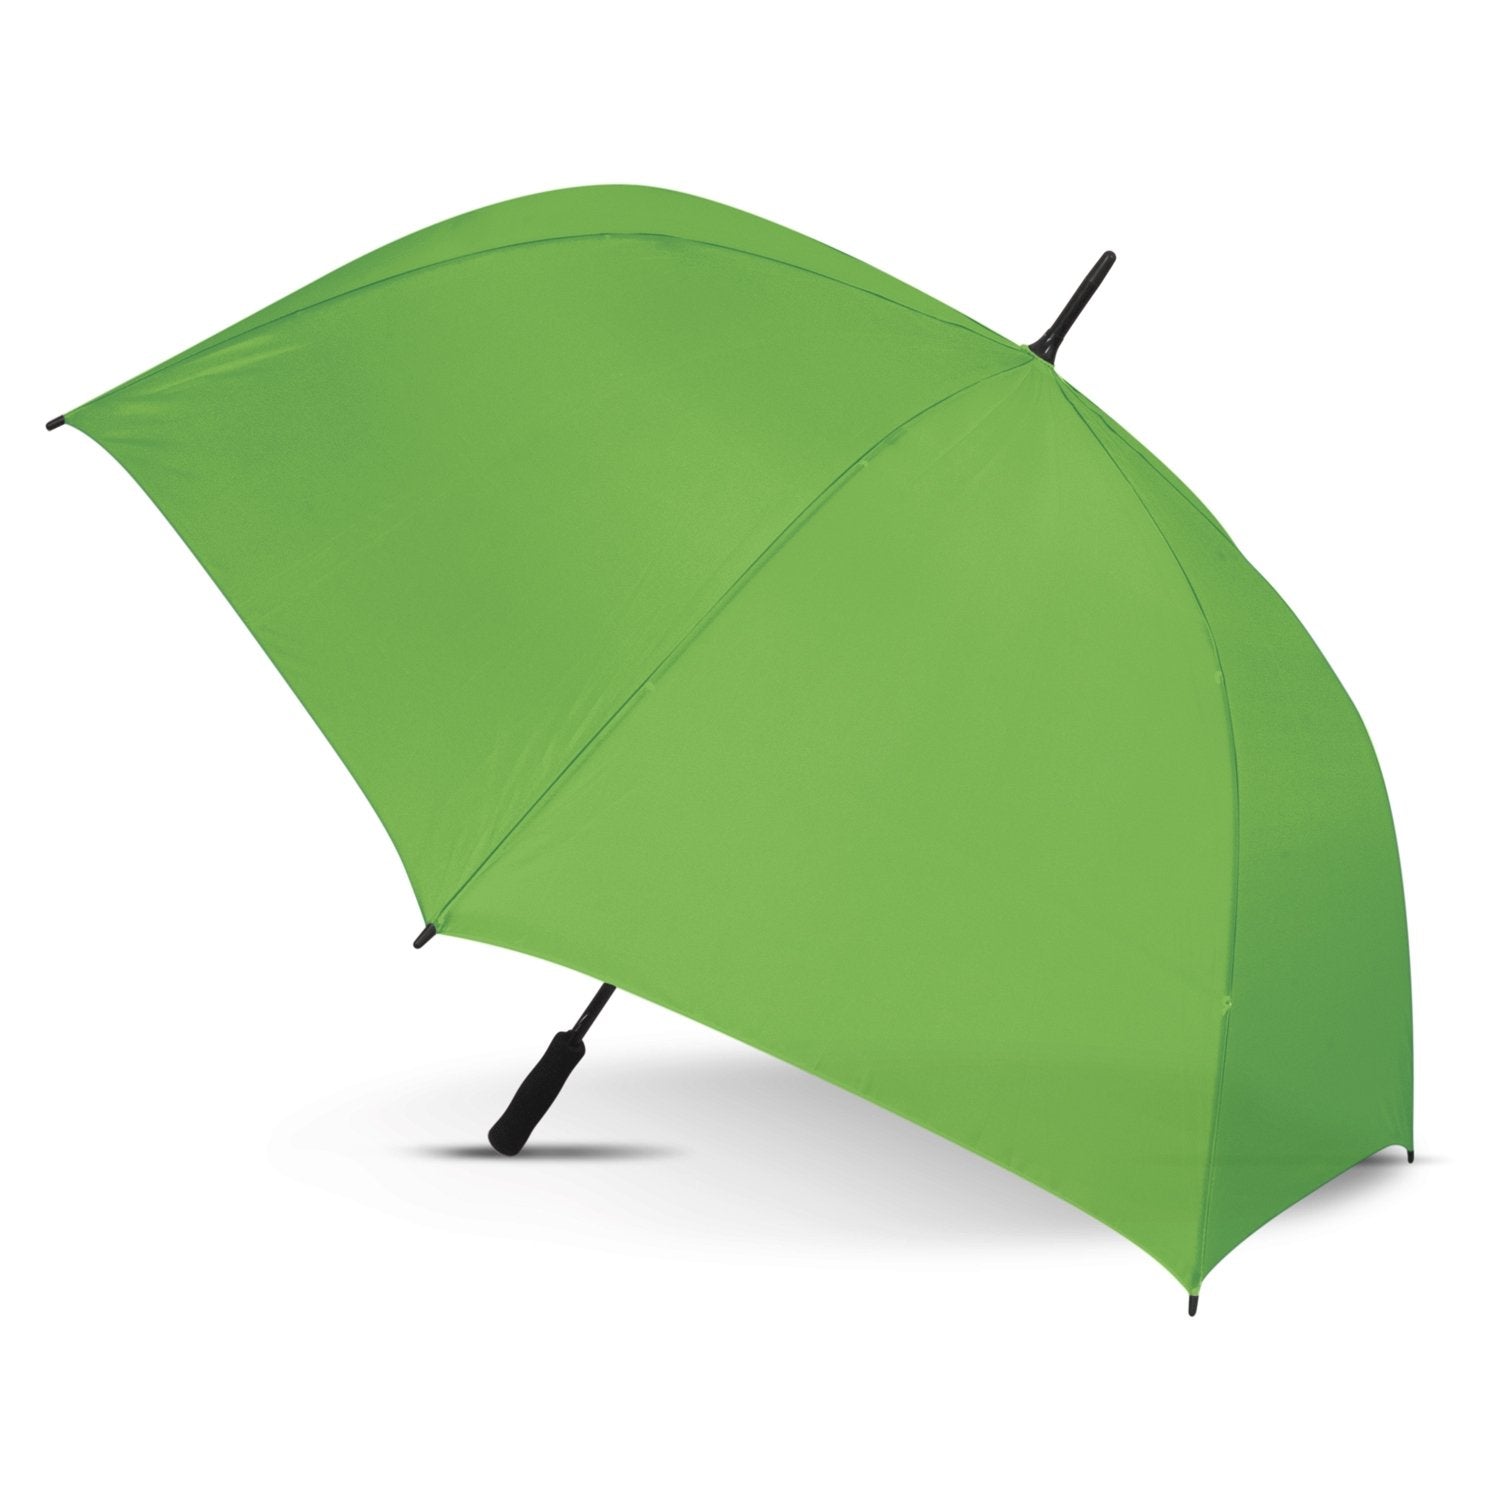 STORM-PROOF®️-premium-sports-umbrella-auto-open-bright-green-umbrella